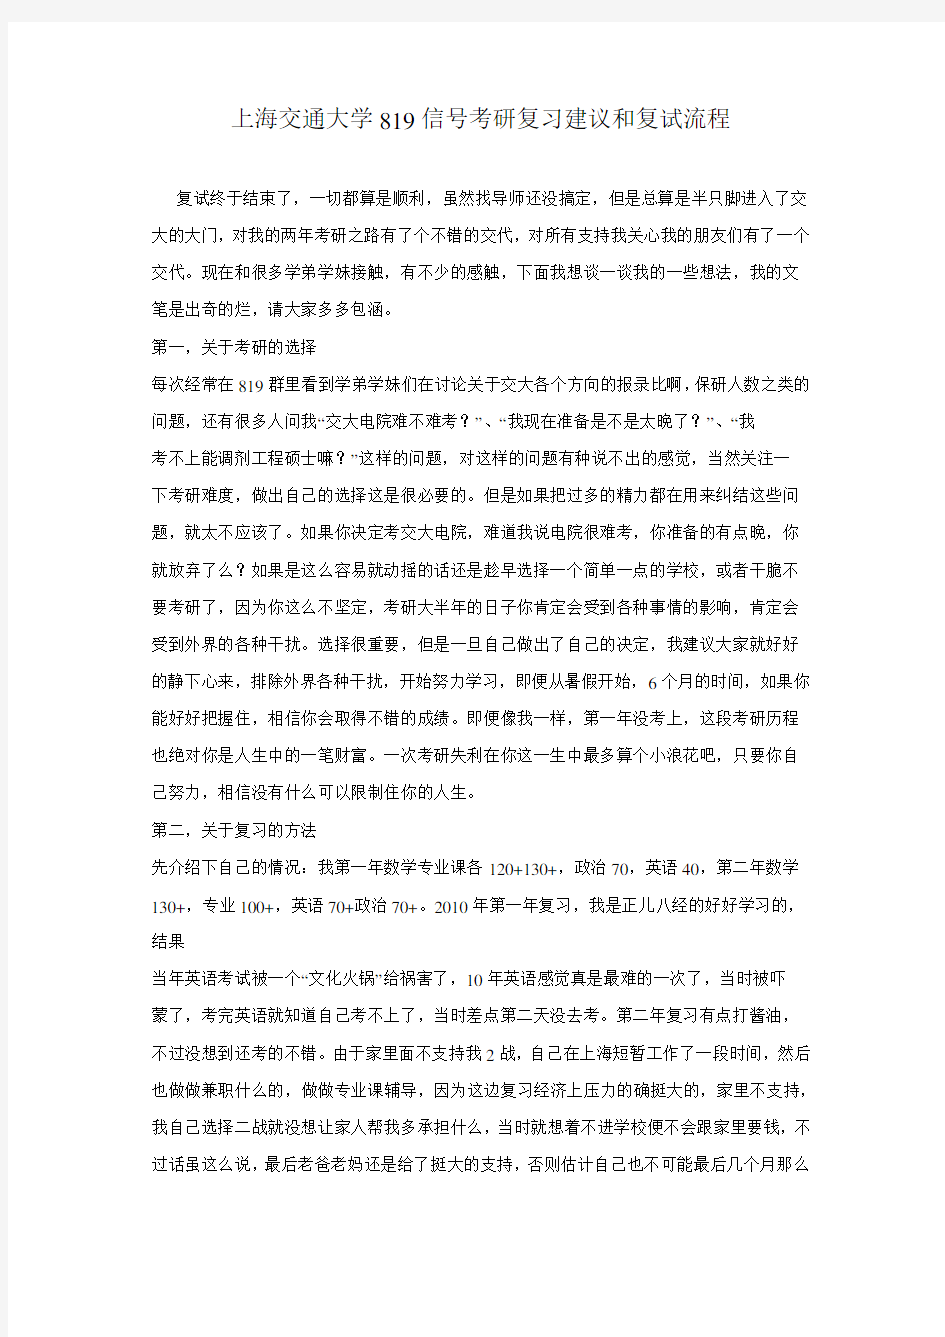 上海交通大学819信号考研复习建议和复试流程